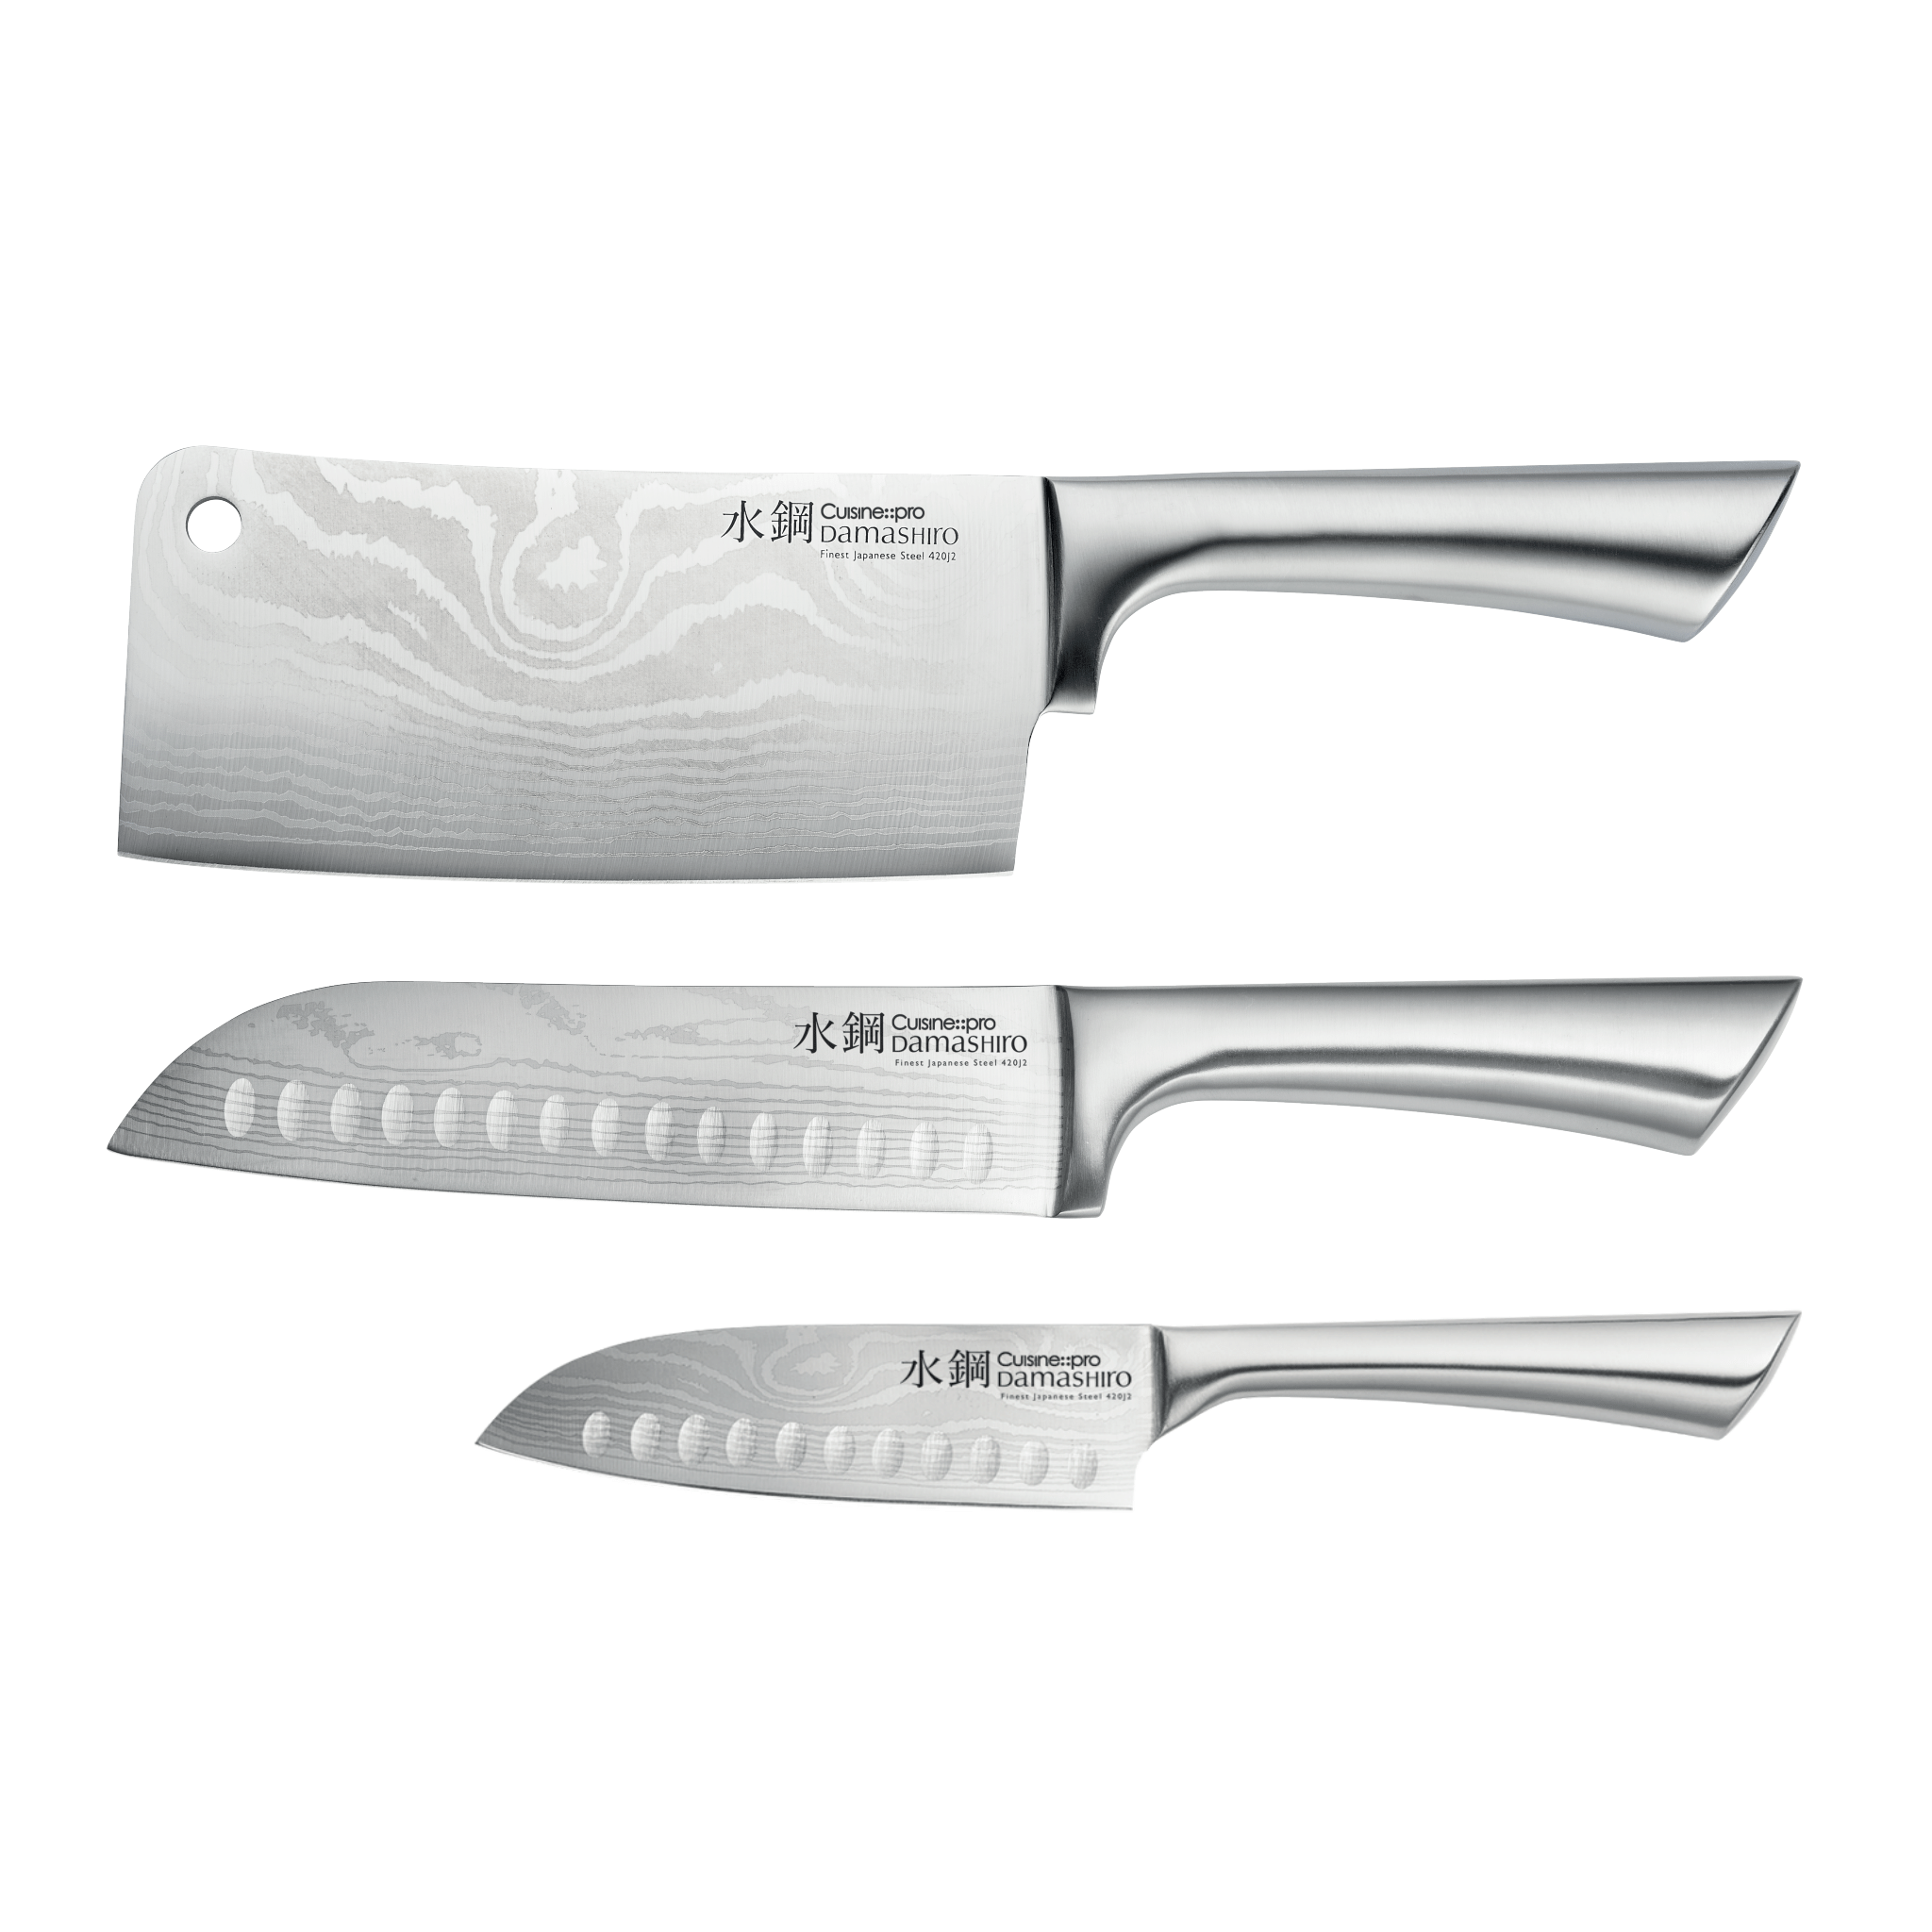 3 couteaux de professionnels pour cuisiner facilement